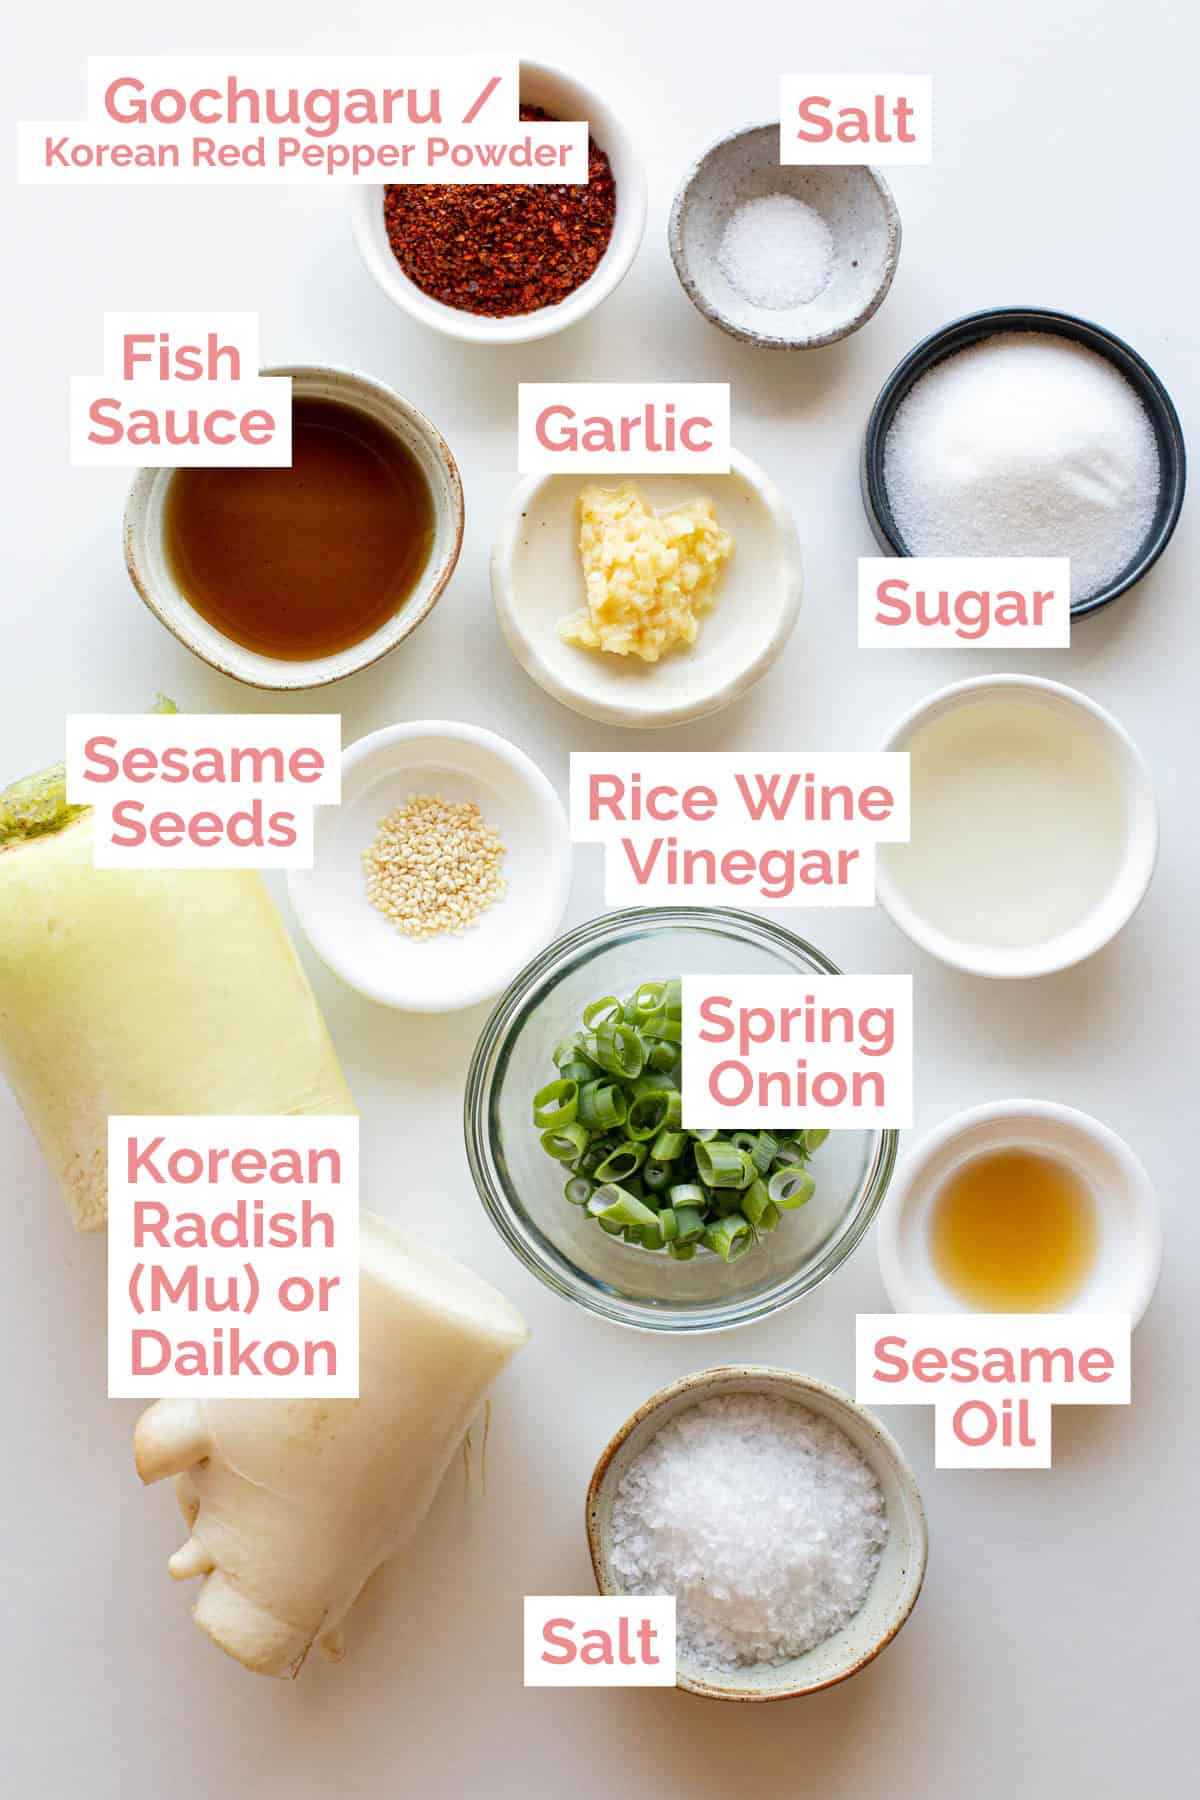 Ingredients laid out ready to make Korean radish salad.